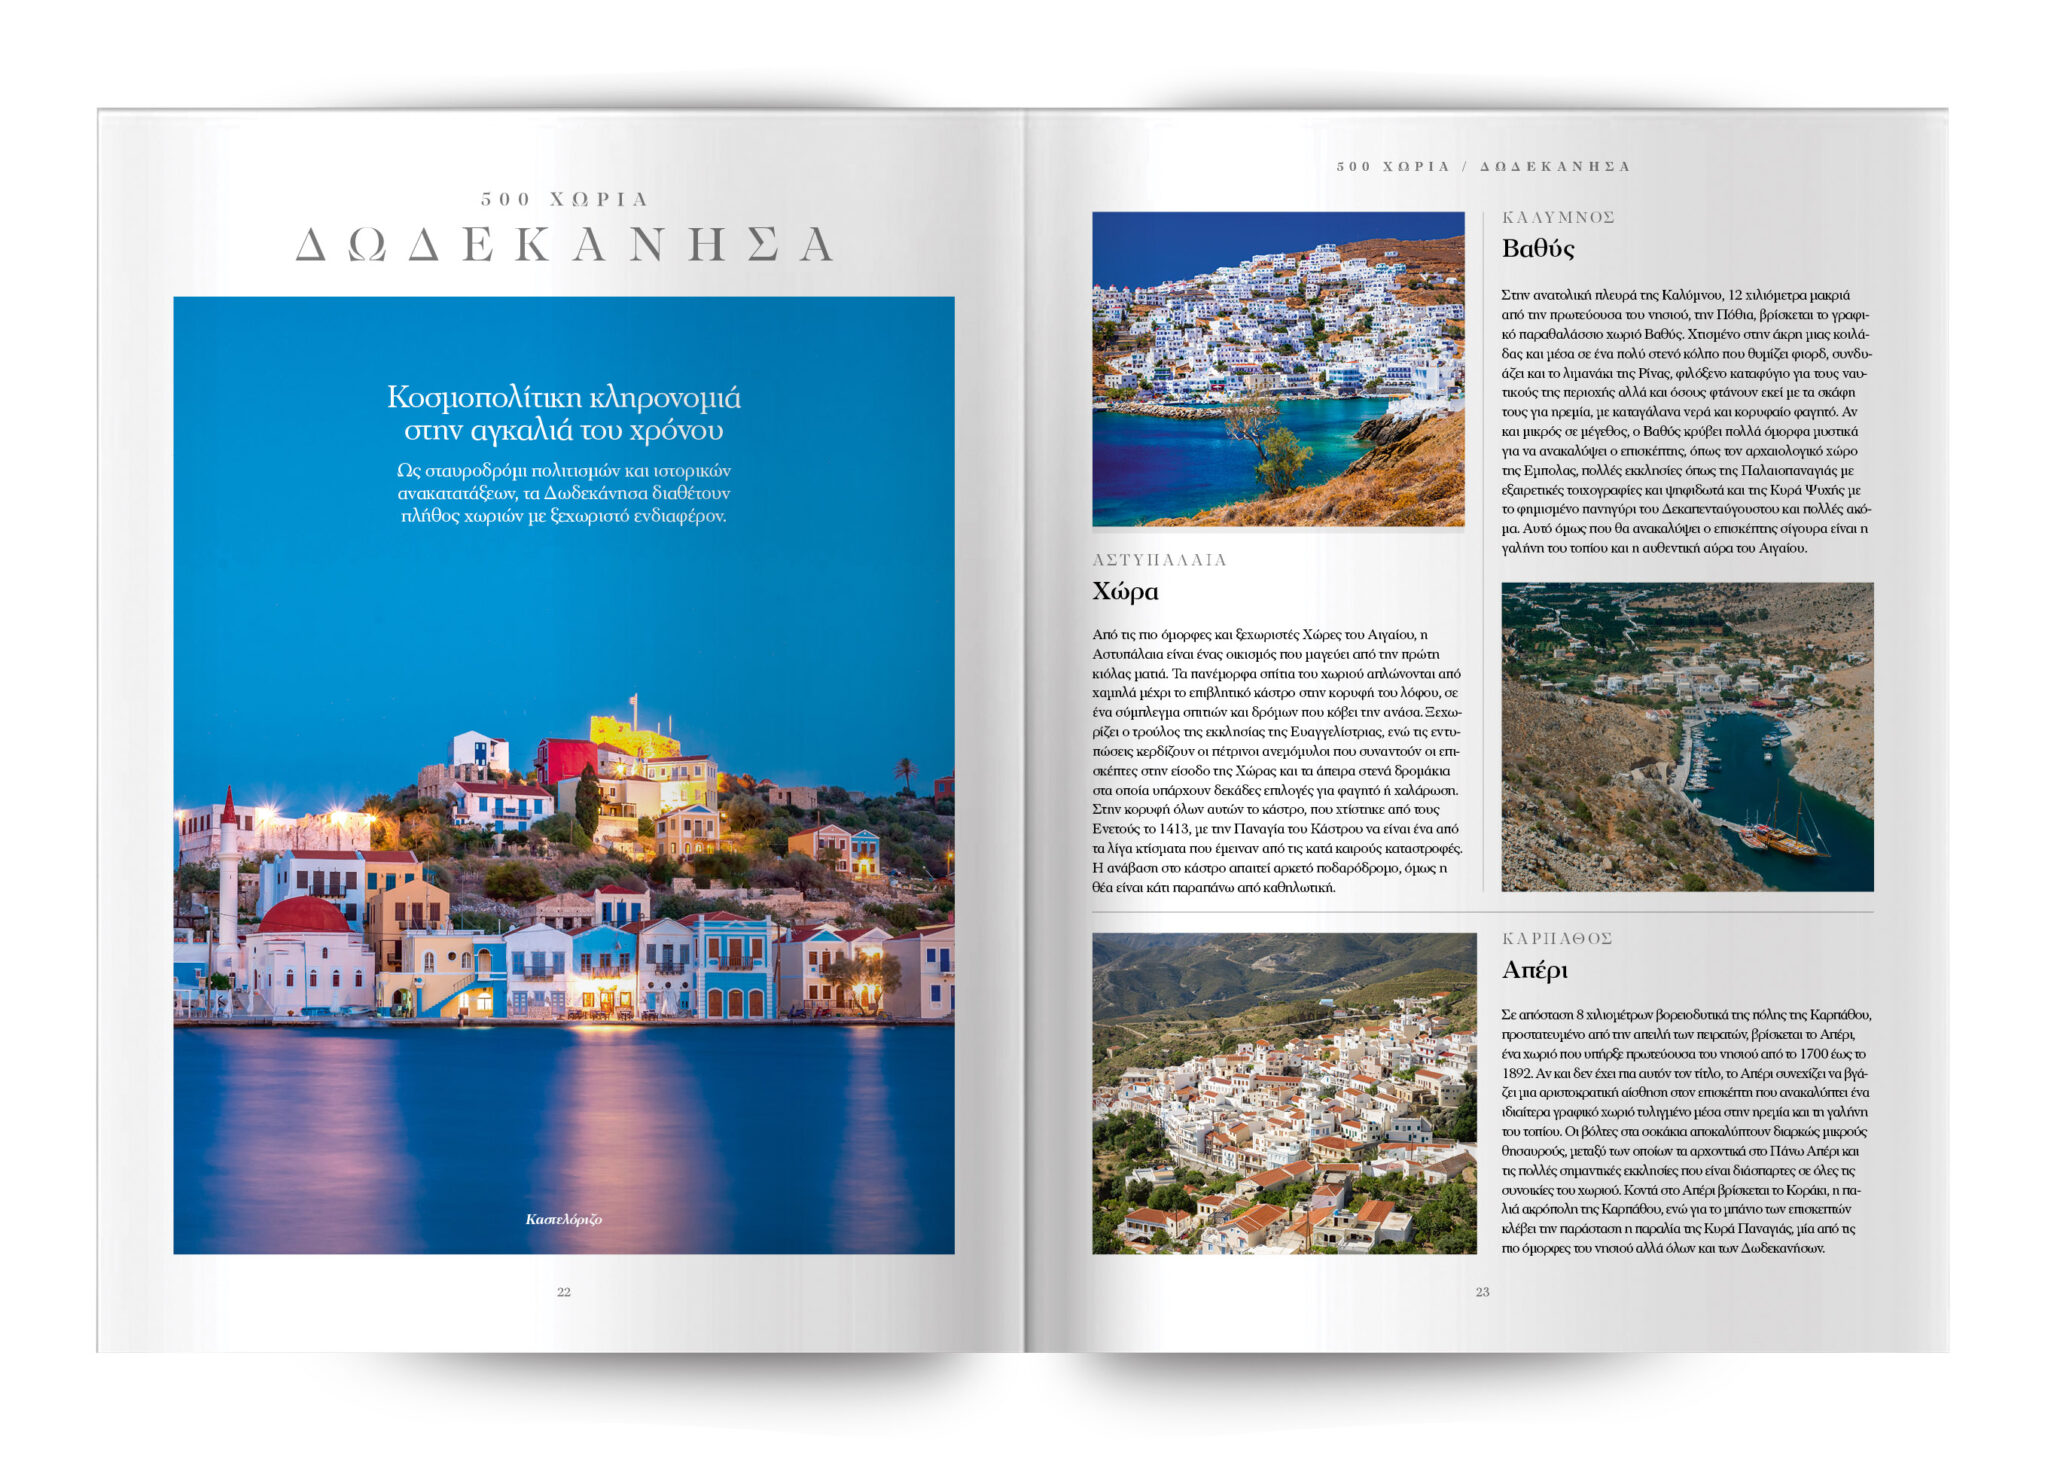 Μια μαγευτική περιπέτεια στα 500 χωριά και παραδοσιακούς οικισμούς της Ελλάδας
